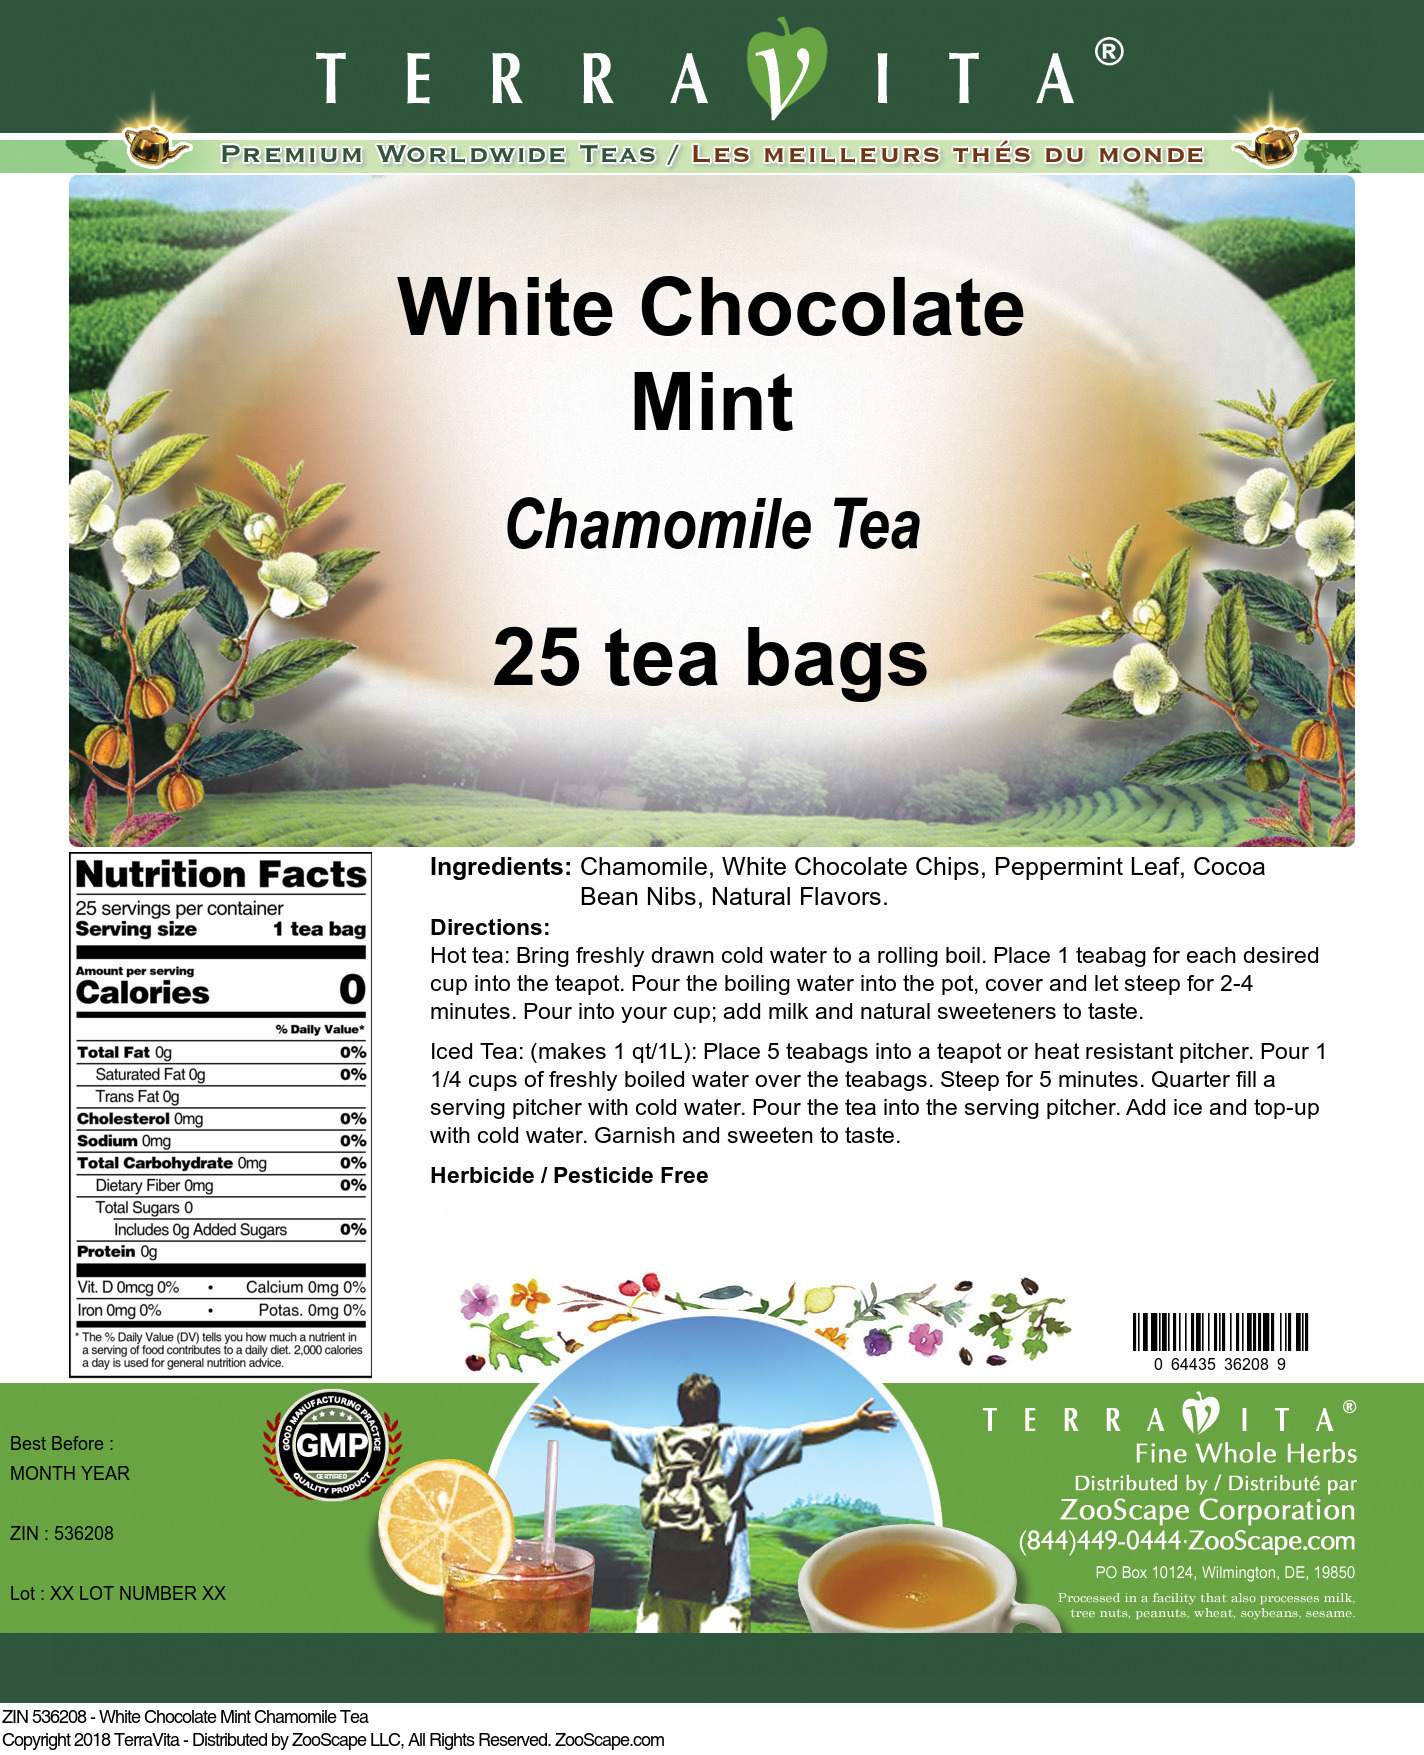 White Chocolate Mint Chamomile Tea - Label